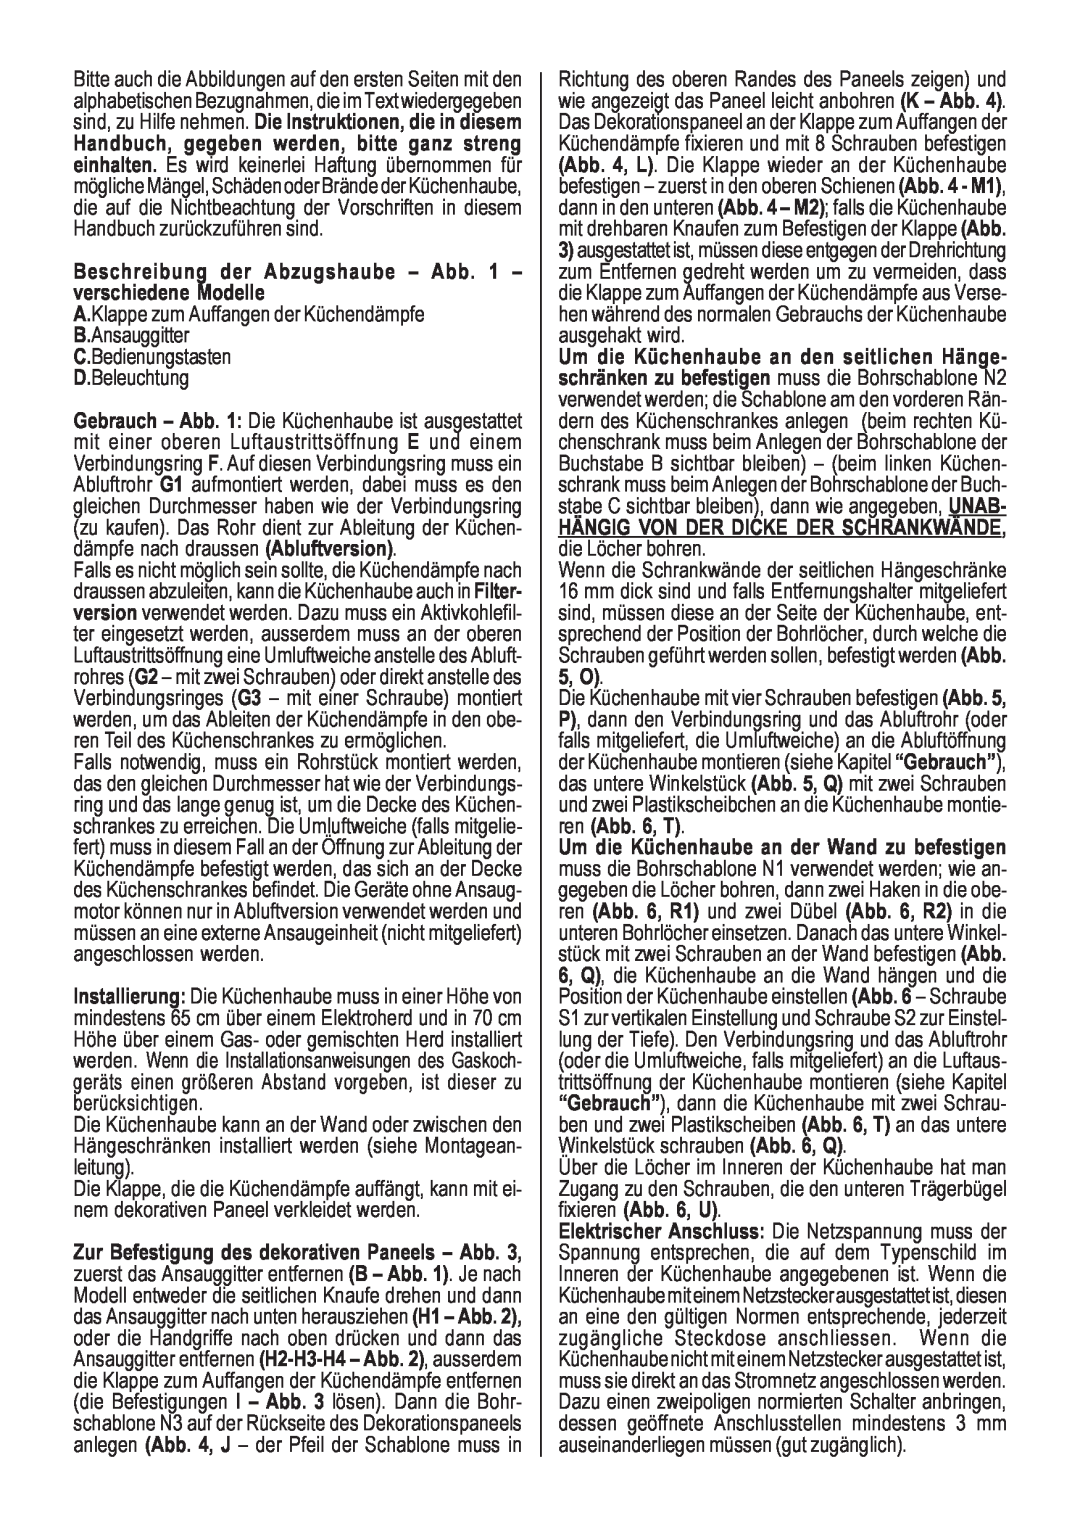 Smeg KSEI60S manual Beschreibung der Abzugshaube - Abb. 1 - verschiedene Modelle 